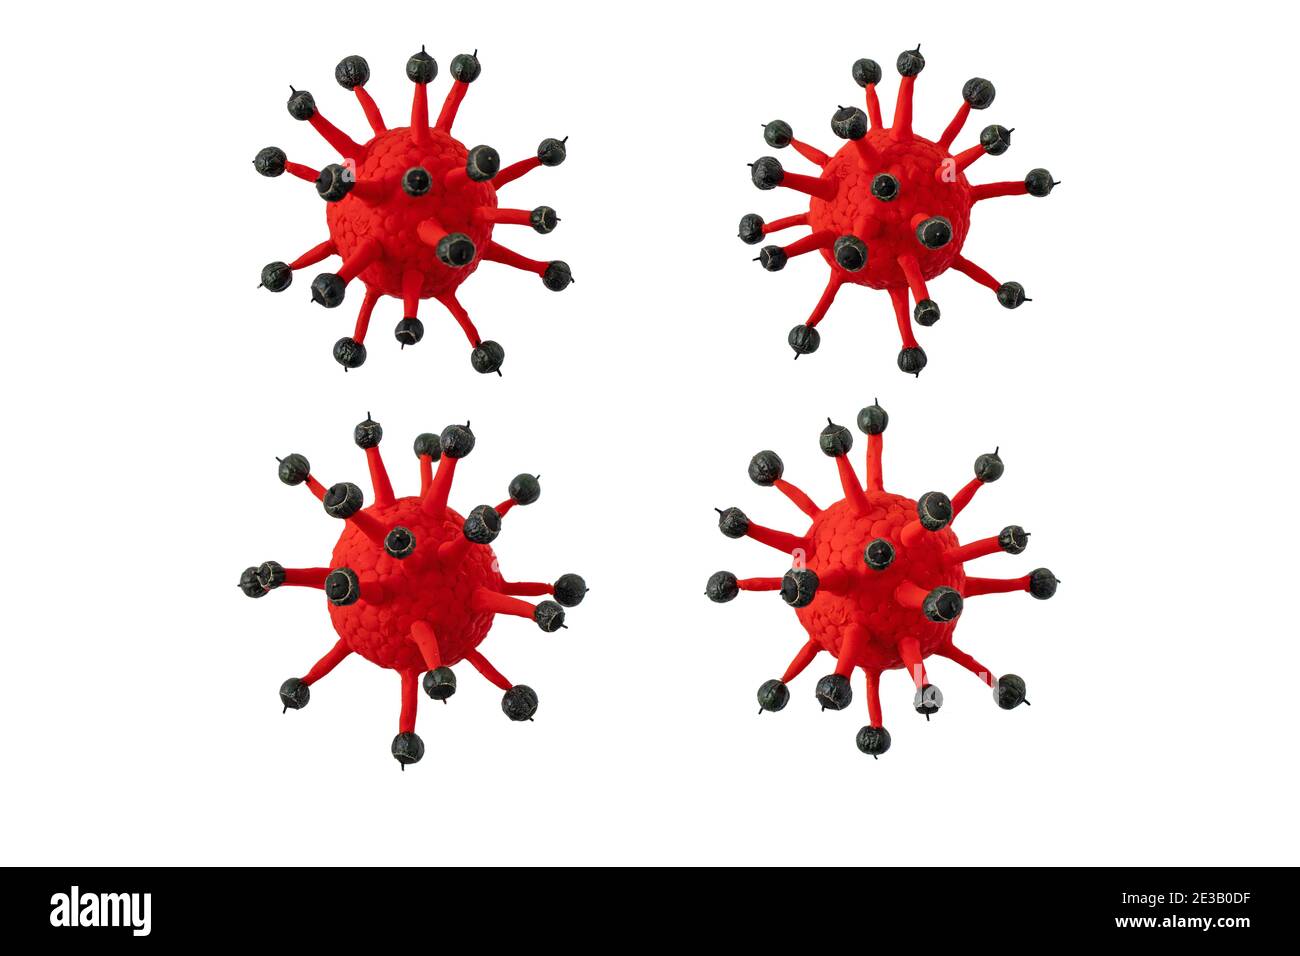 Cellules du coronavirus isolées sur blanc. Illustration 3d Covid-19 virions. Banque D'Images